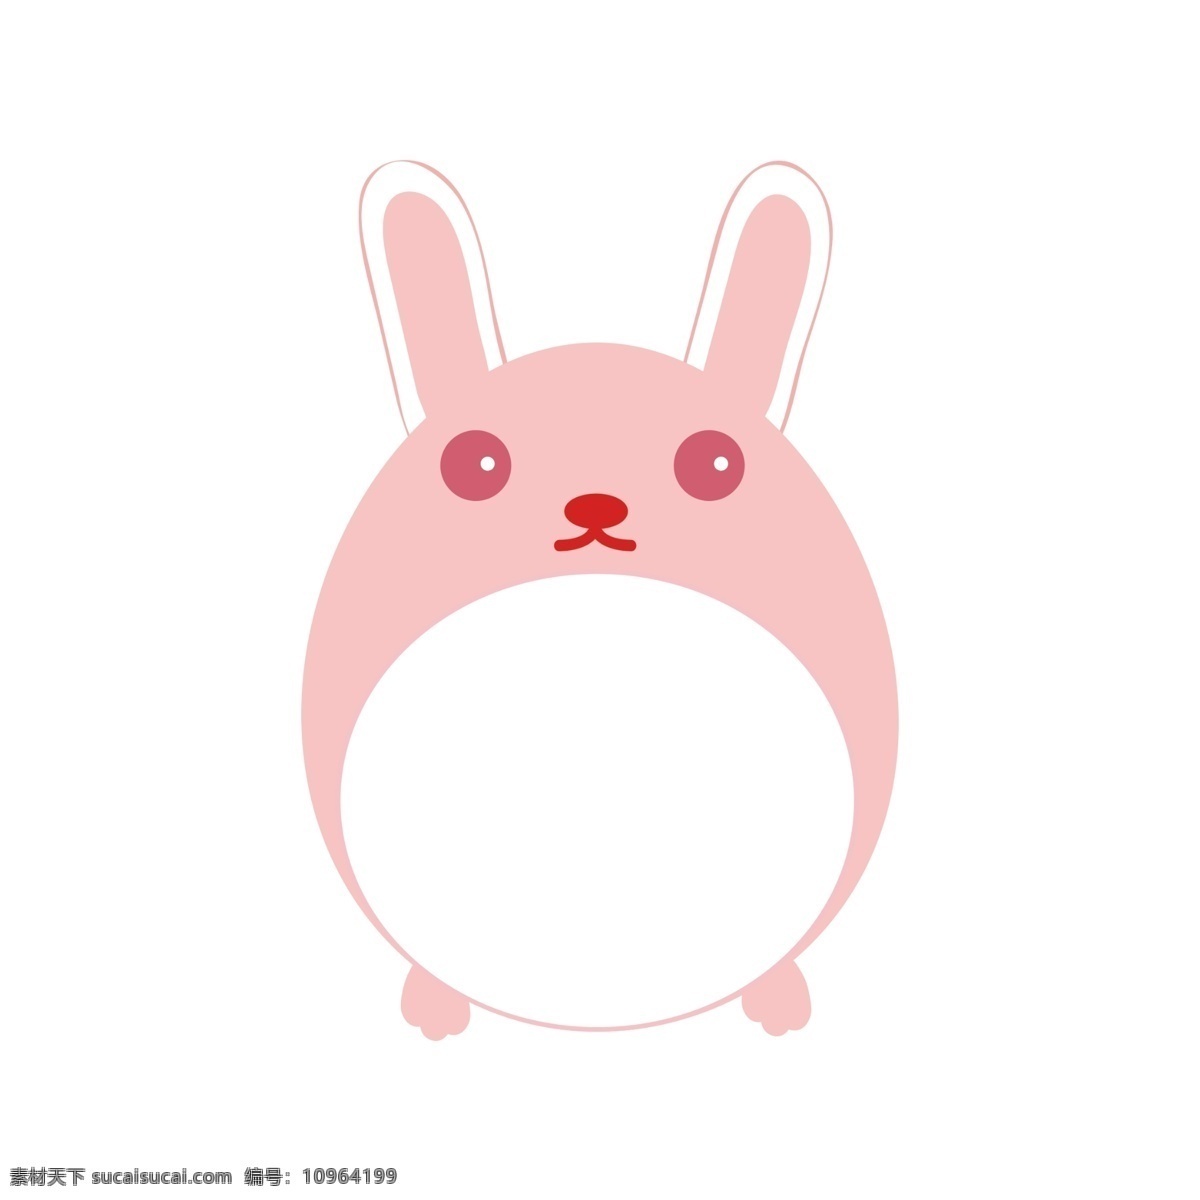 手绘 可爱 兔子 小 动物 边框 贴纸 小动物 边框贴纸